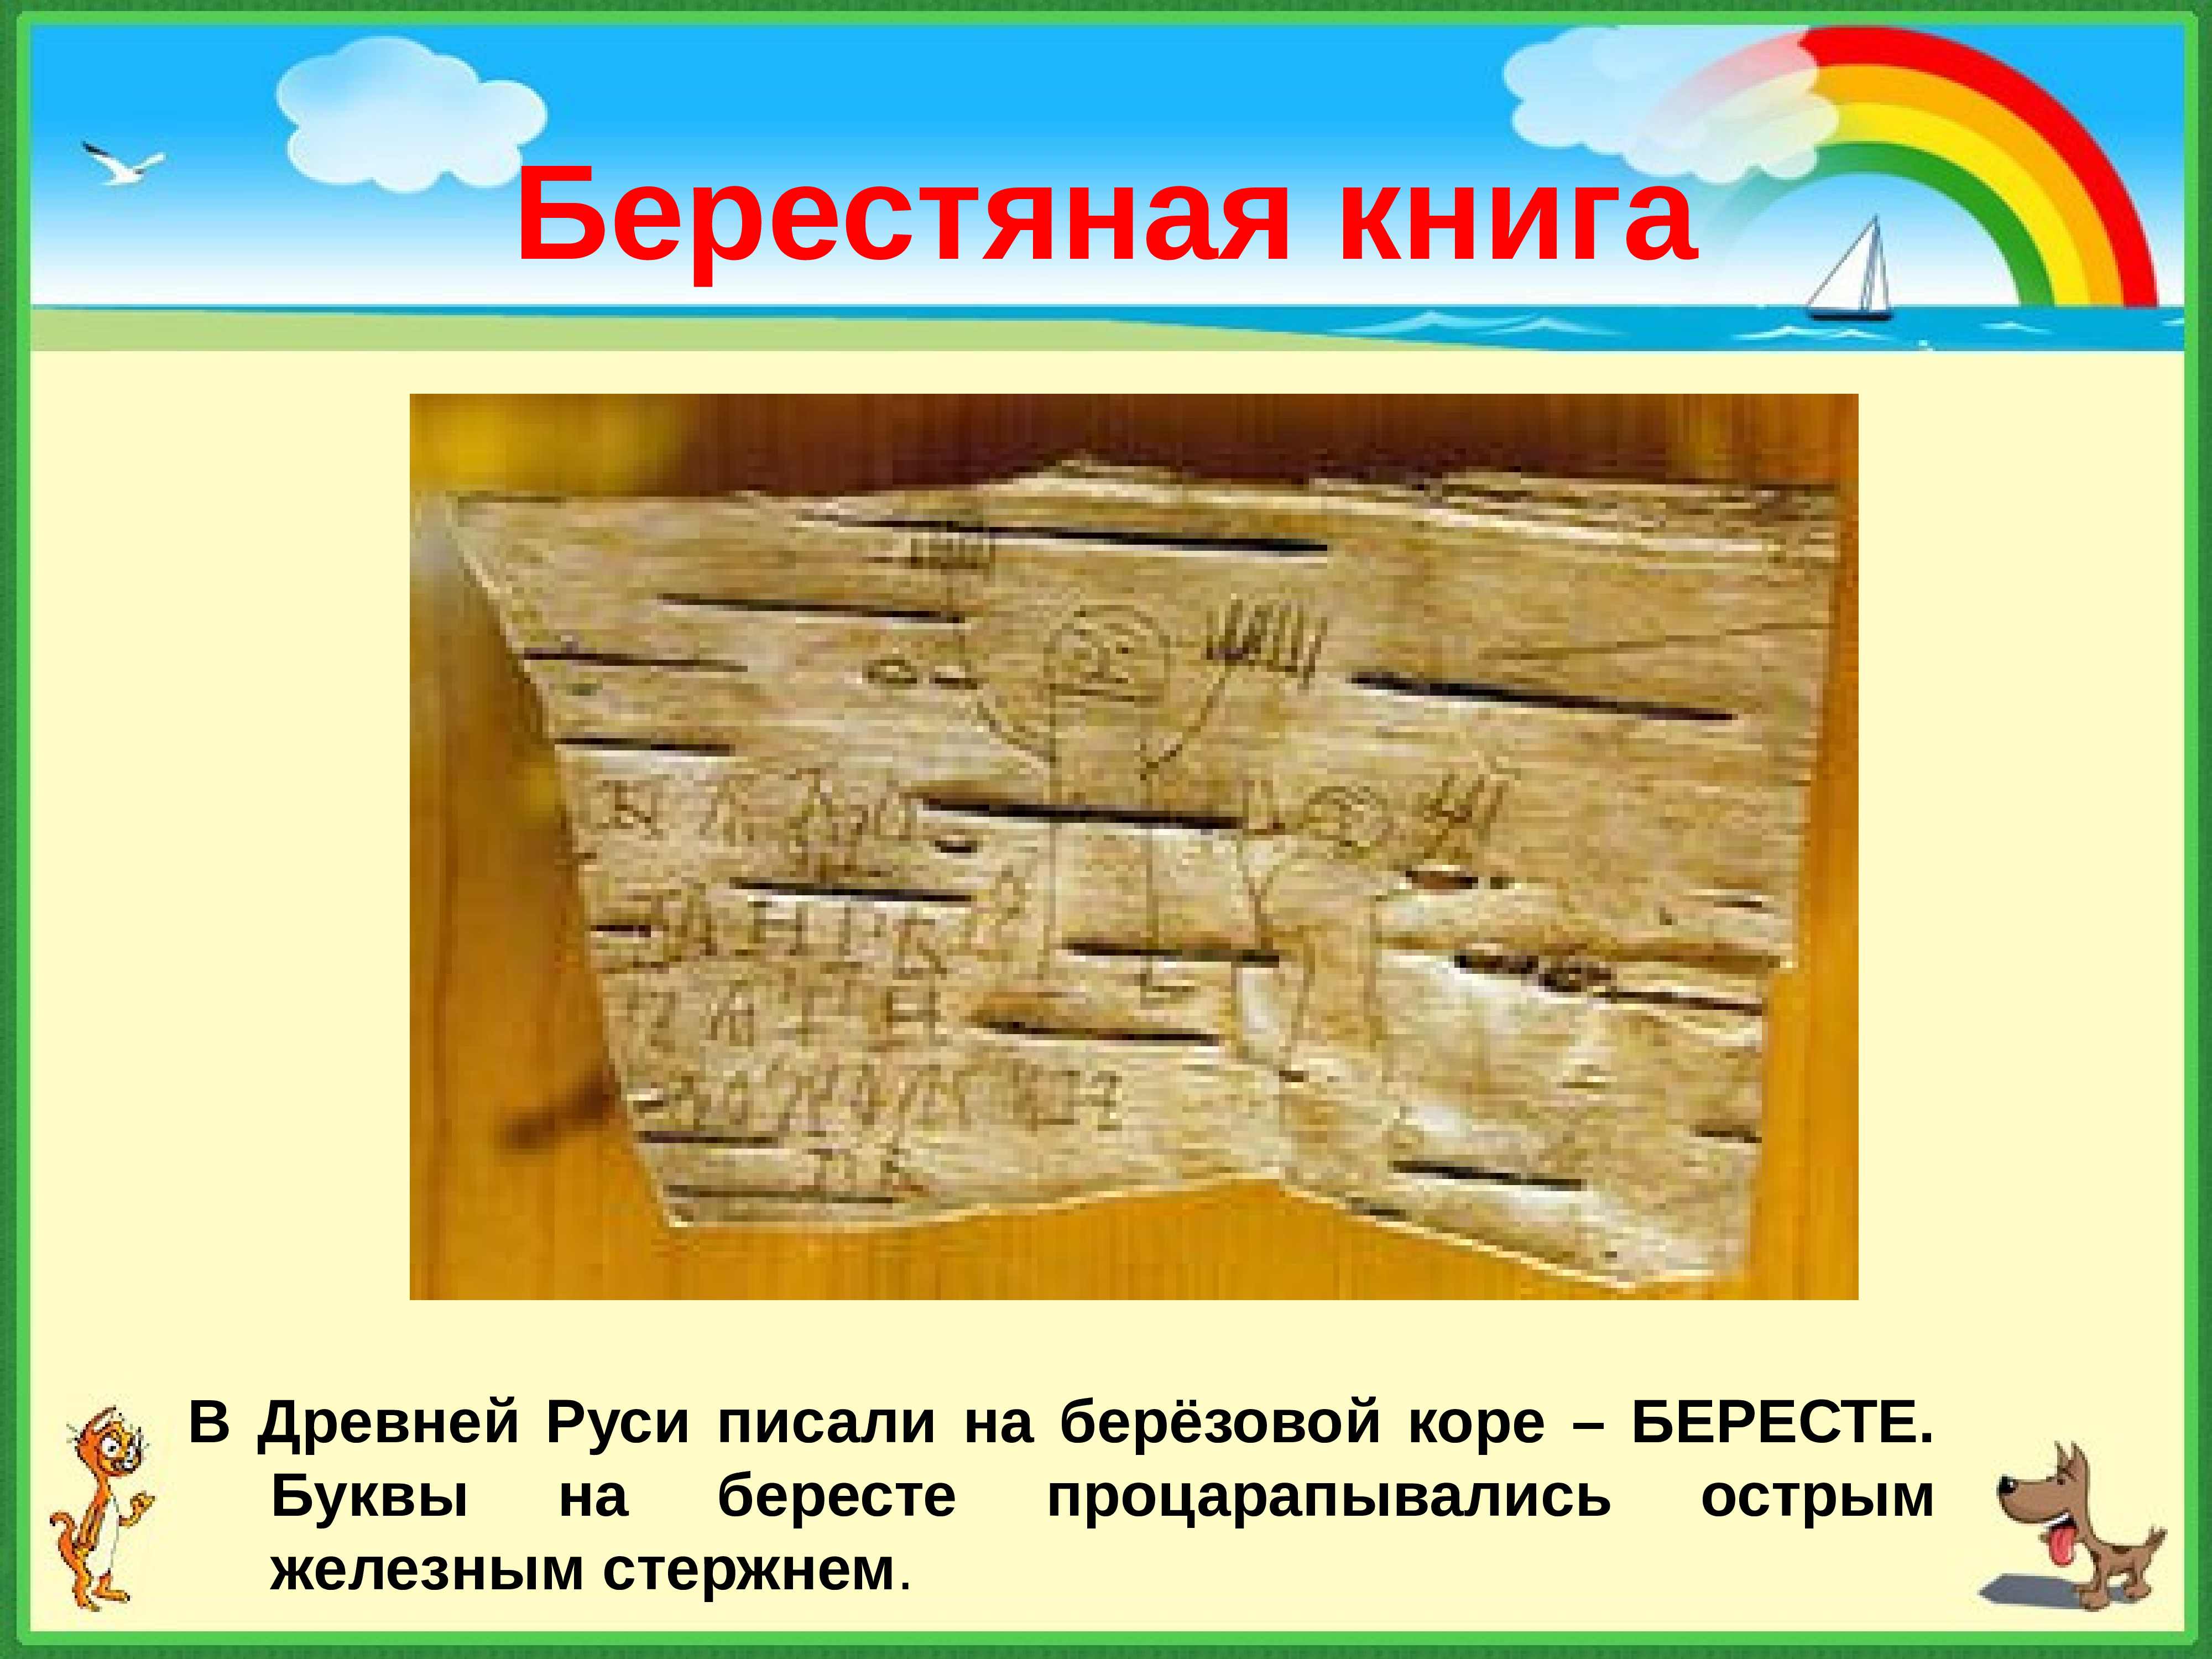 Берестяные книги древней Руси